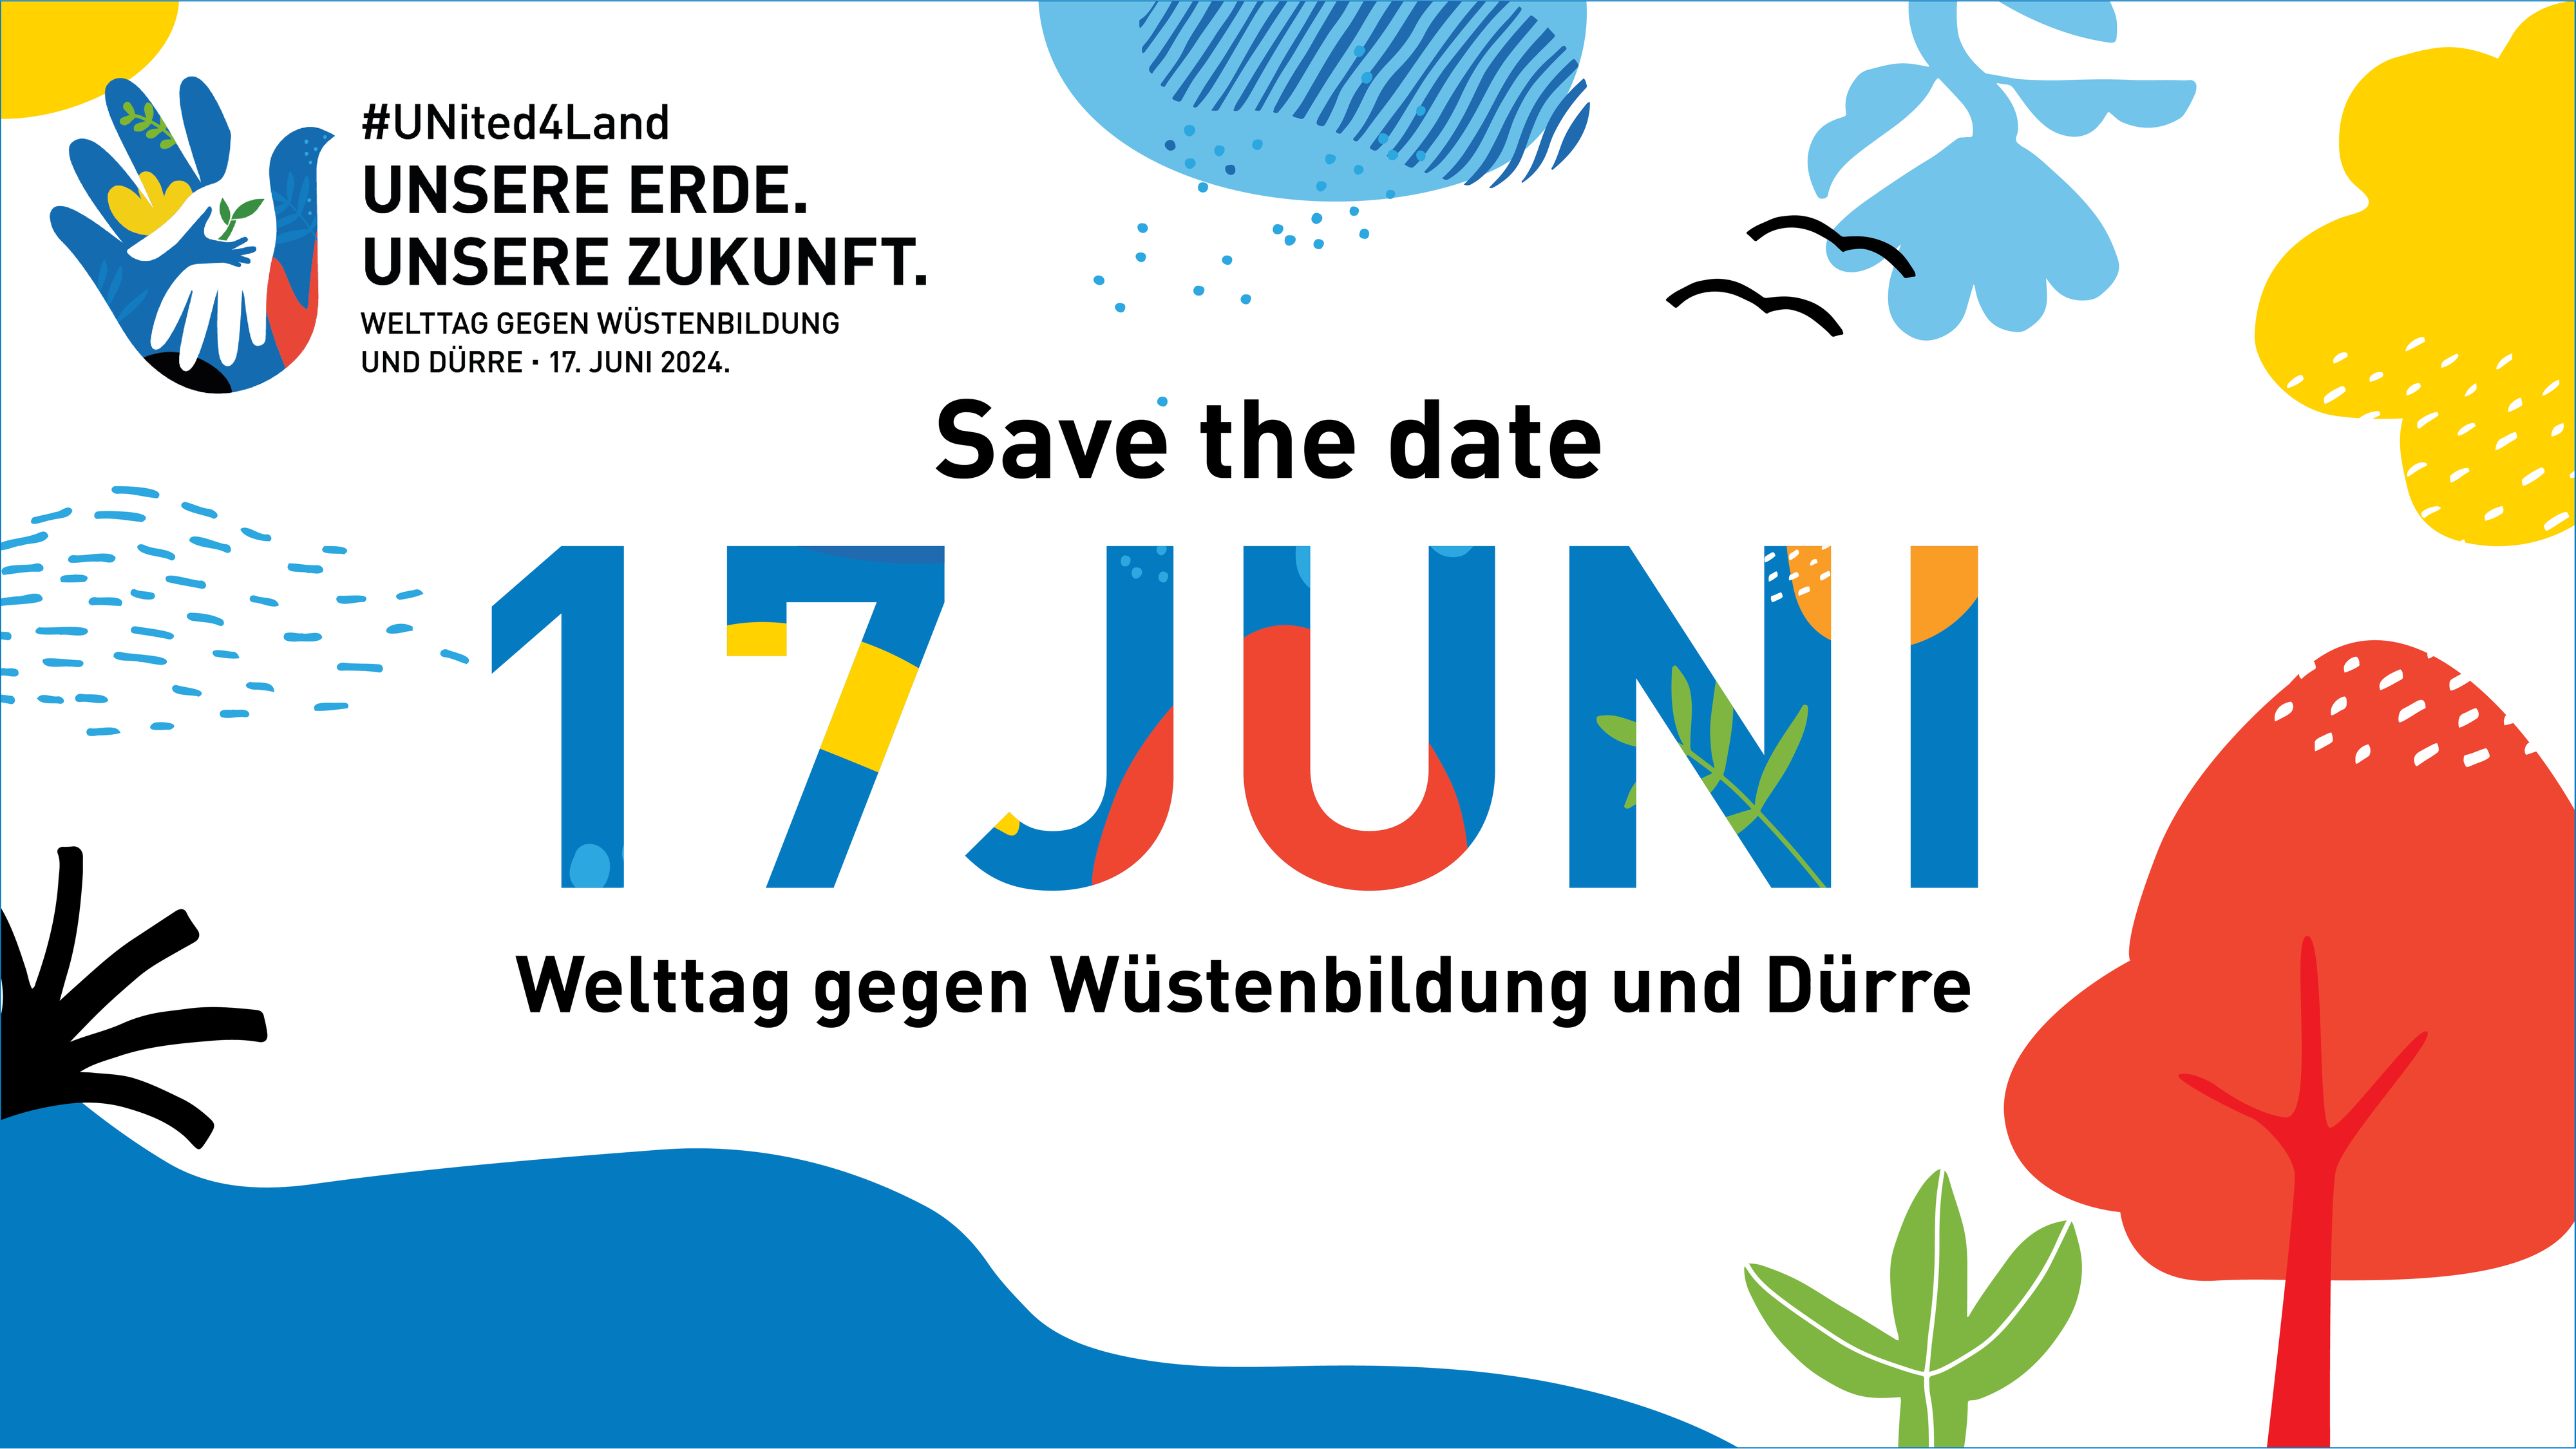 Save the date: 17. Juni Welttag gegen Wüstenbildung und Dürre